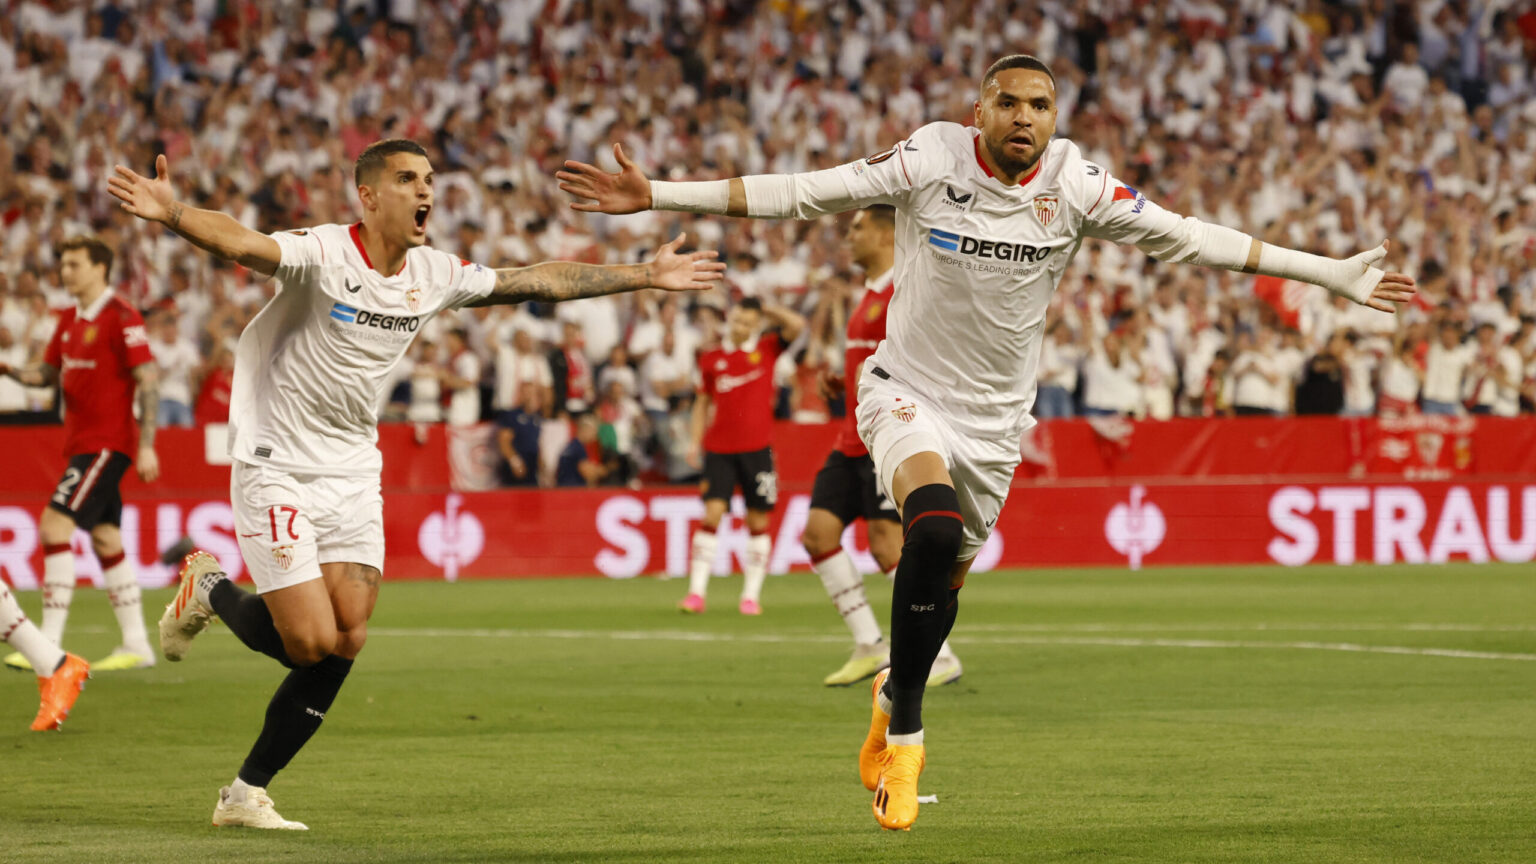 El Sevilla, en semifinales de la Europa League tras ganar al United